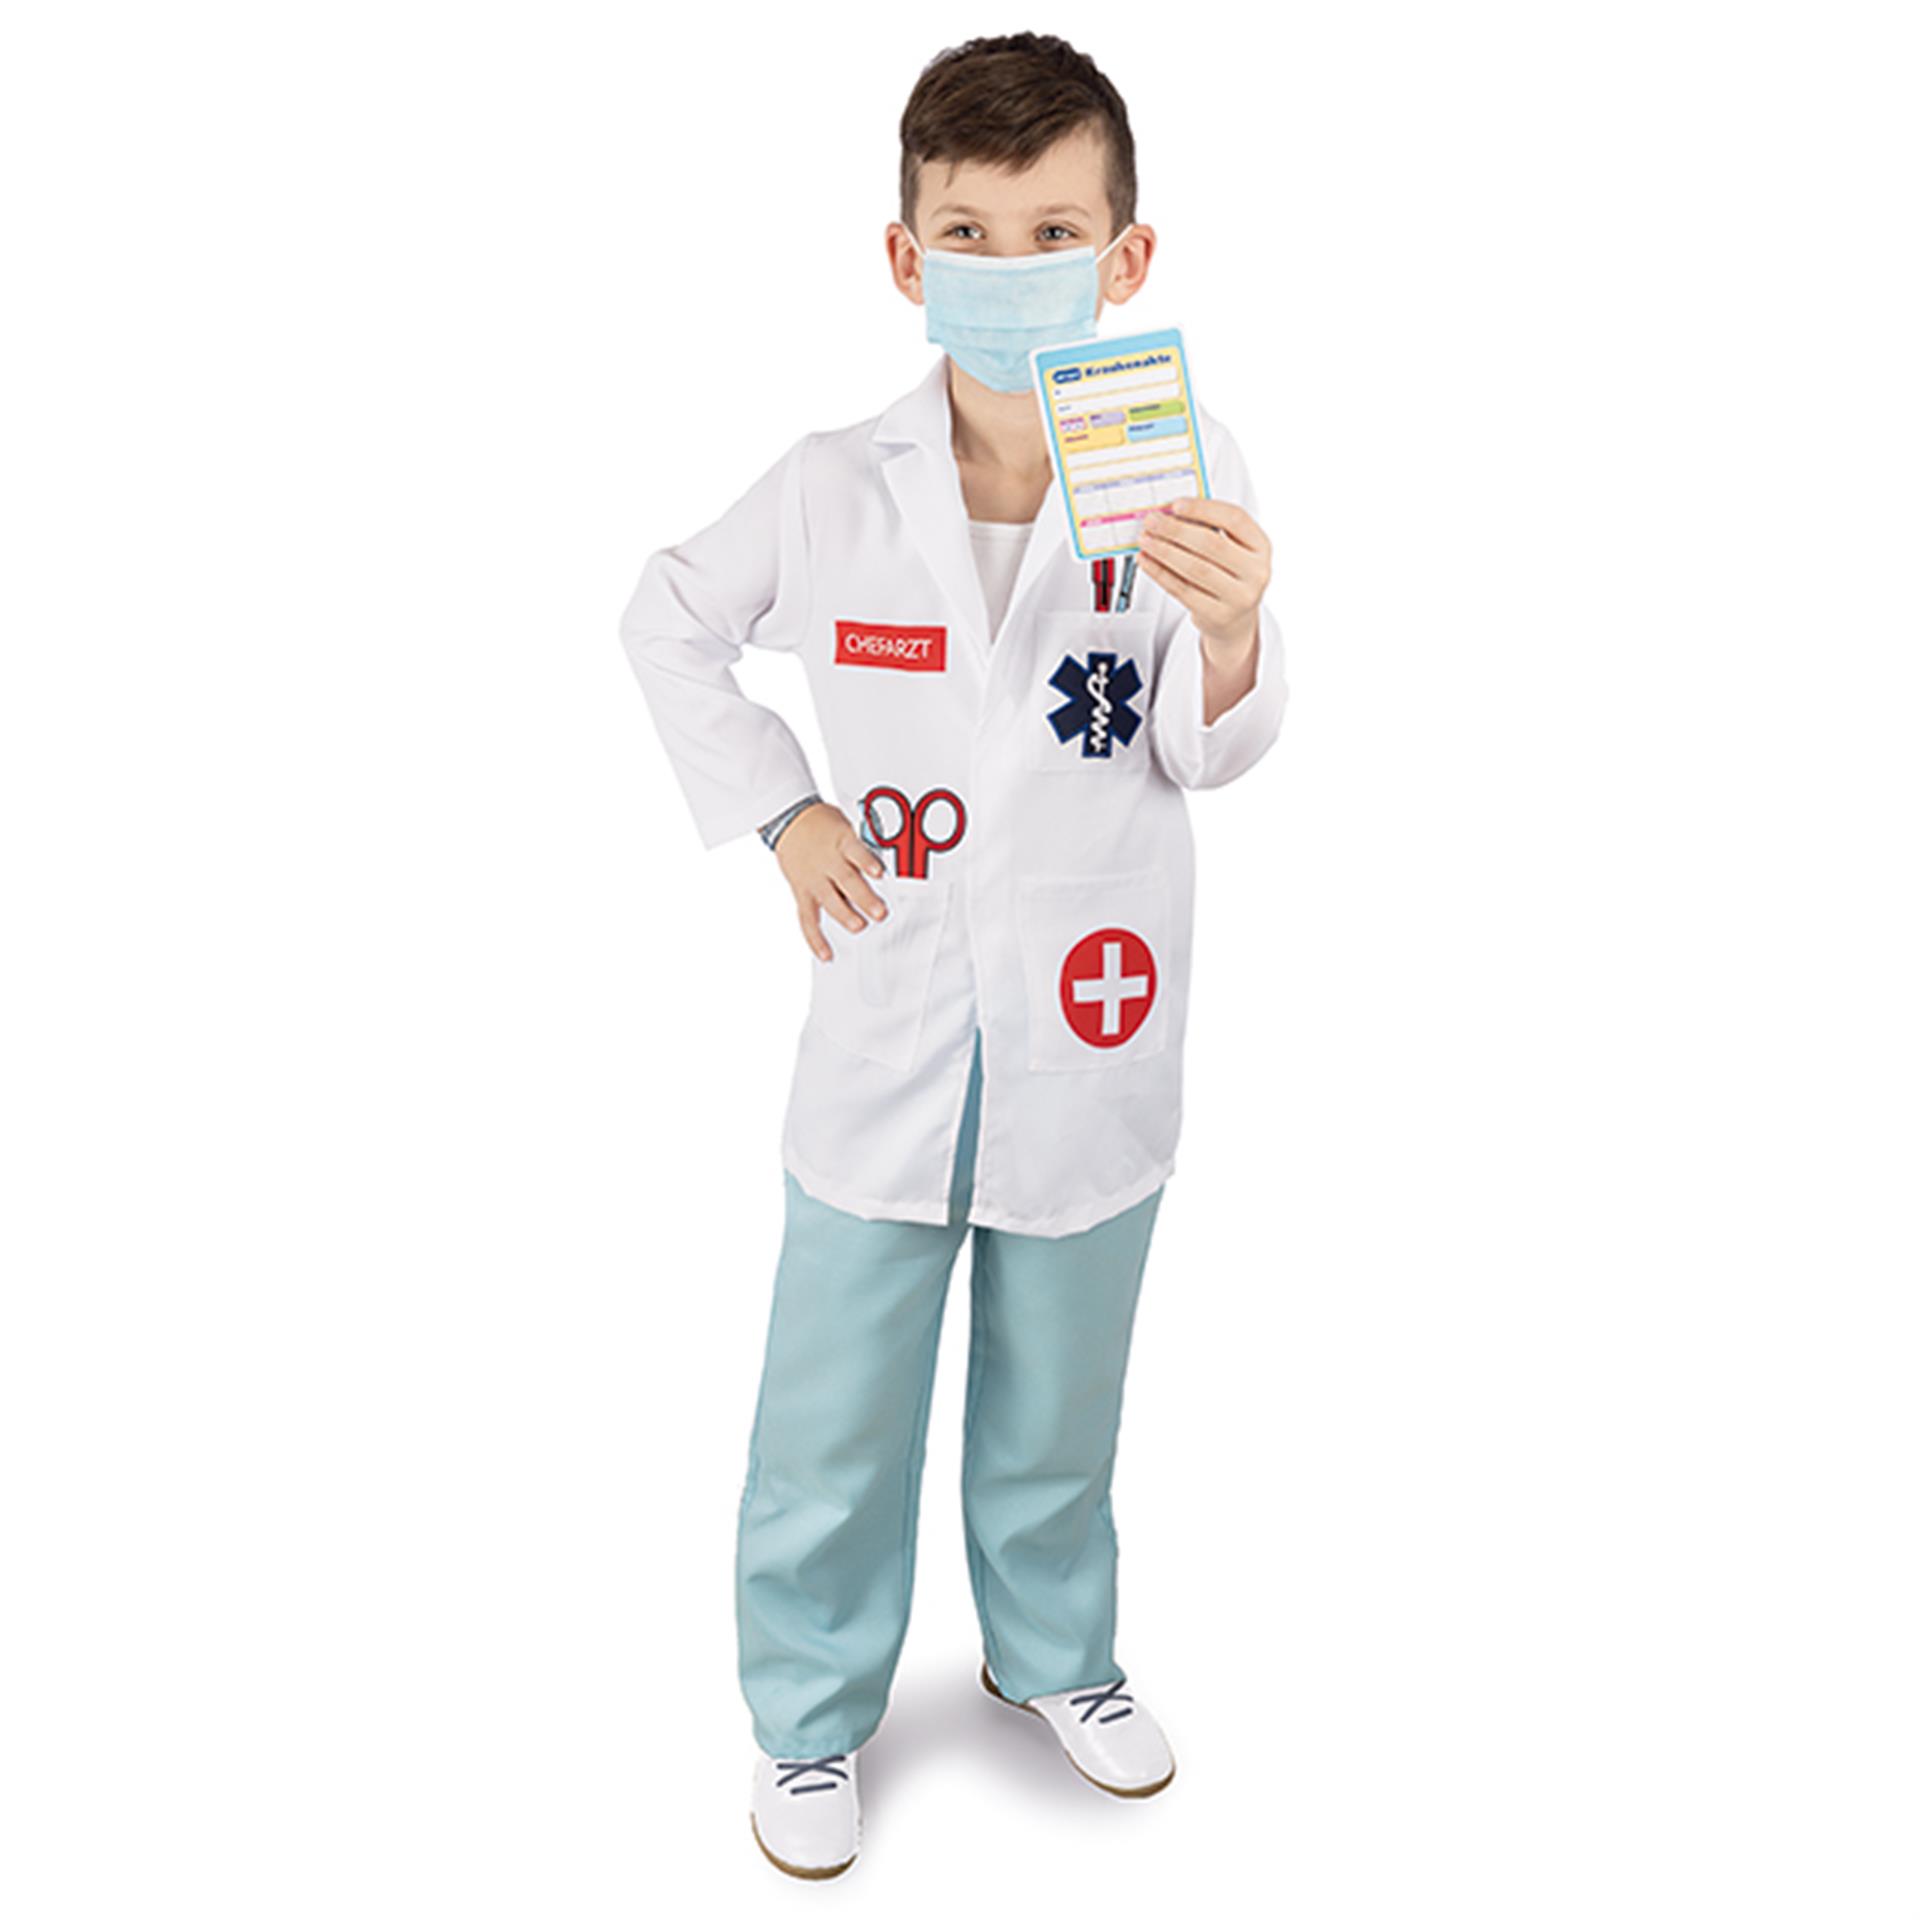 Ärzte Uniform Kinderkostüm